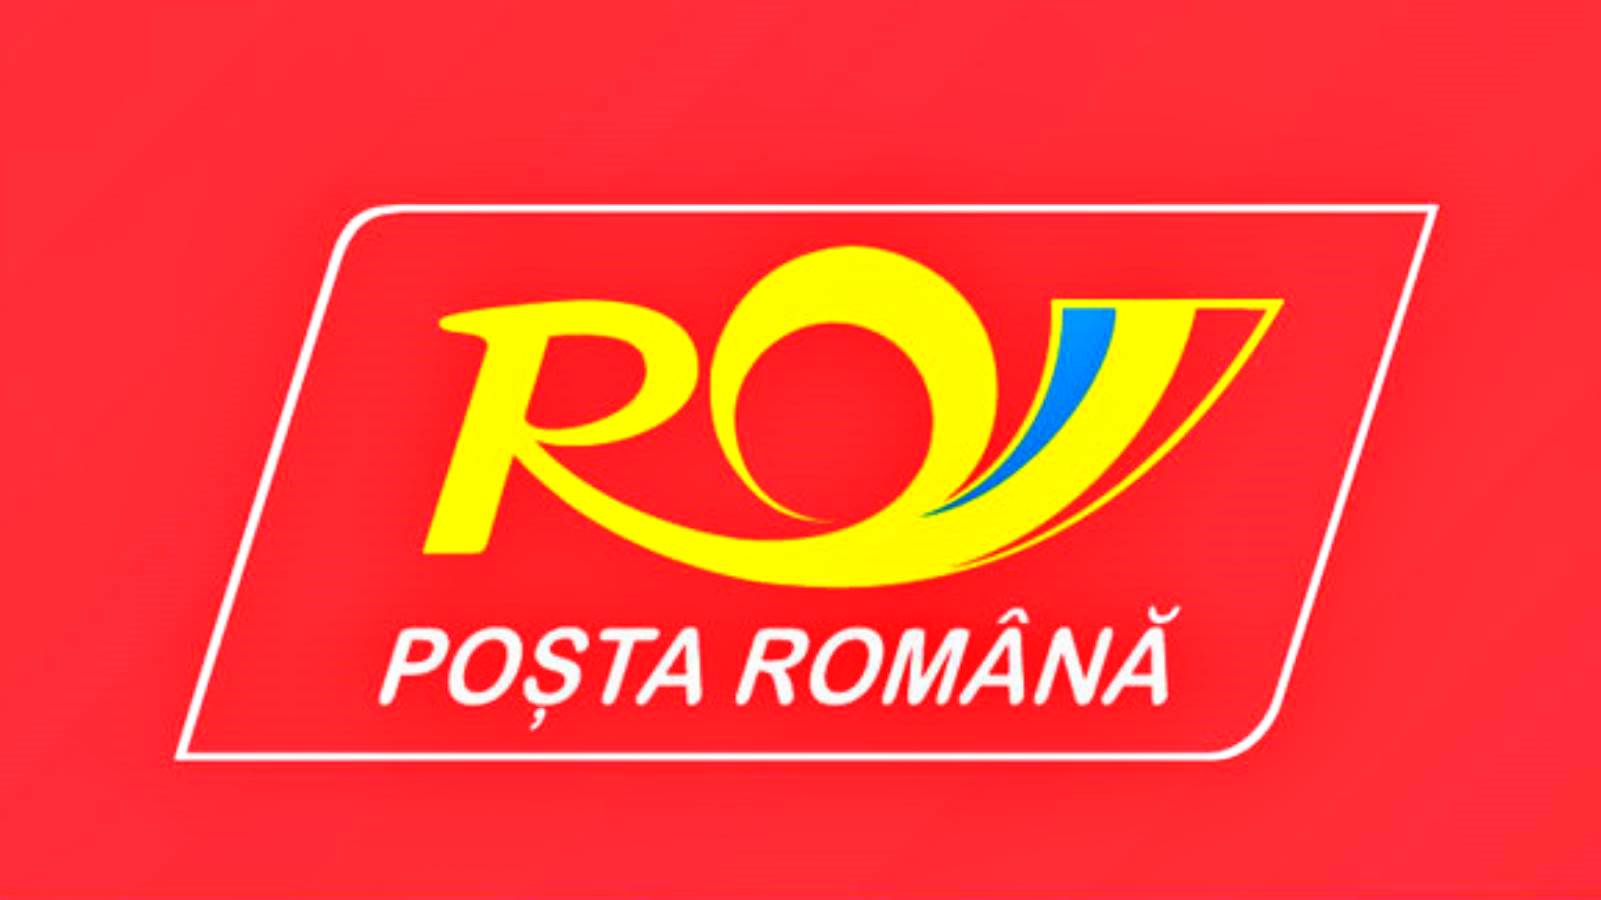 Les mesures annoncées par la Poste roumaine pour les Roumains de tout le pays